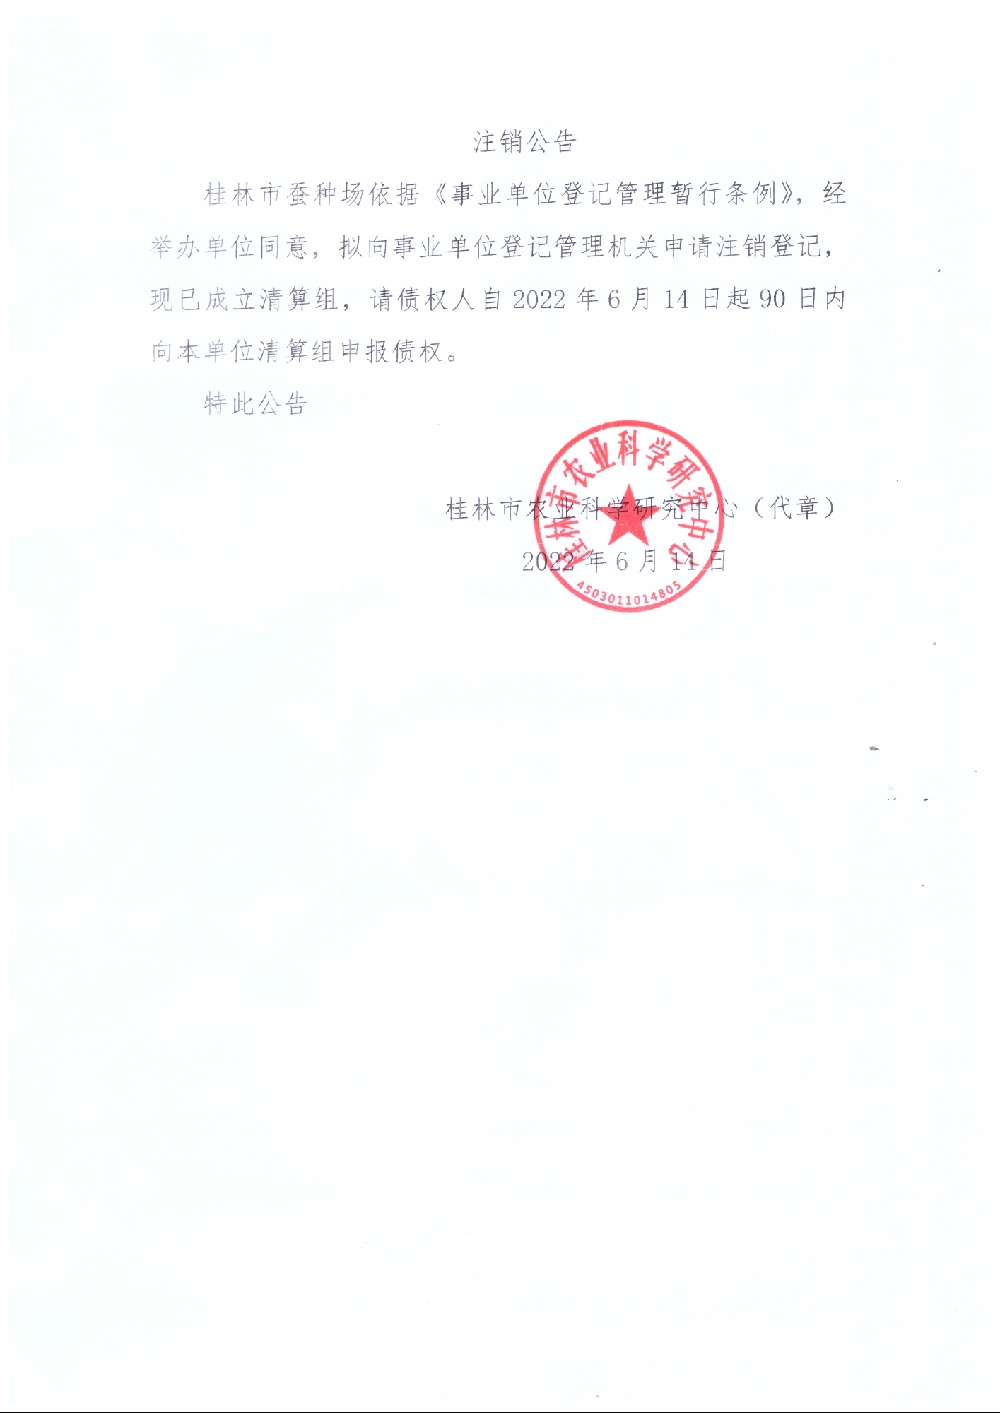 桂林市蚕种场注销公告